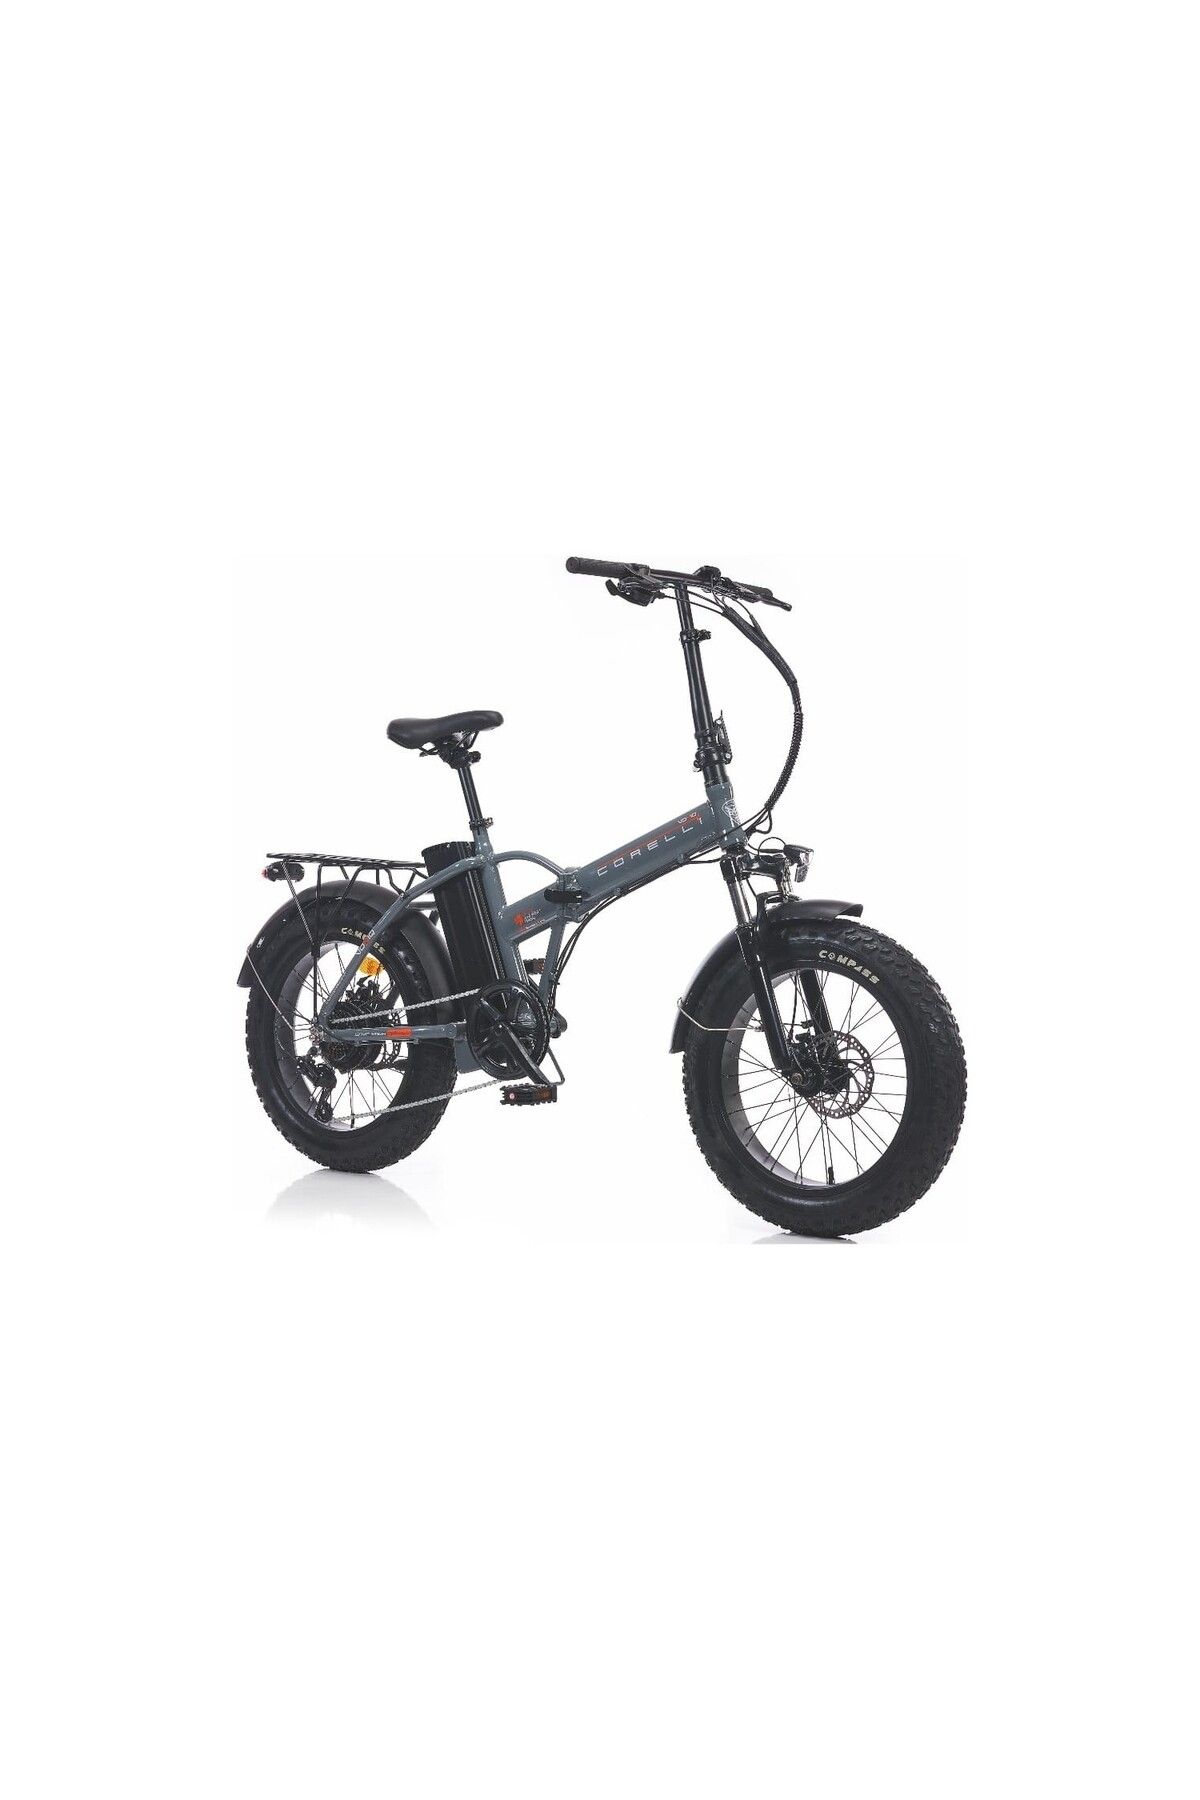 Corelli Voniq E Fat Bike Katlanır Elektirikli Bisiklet GRİ